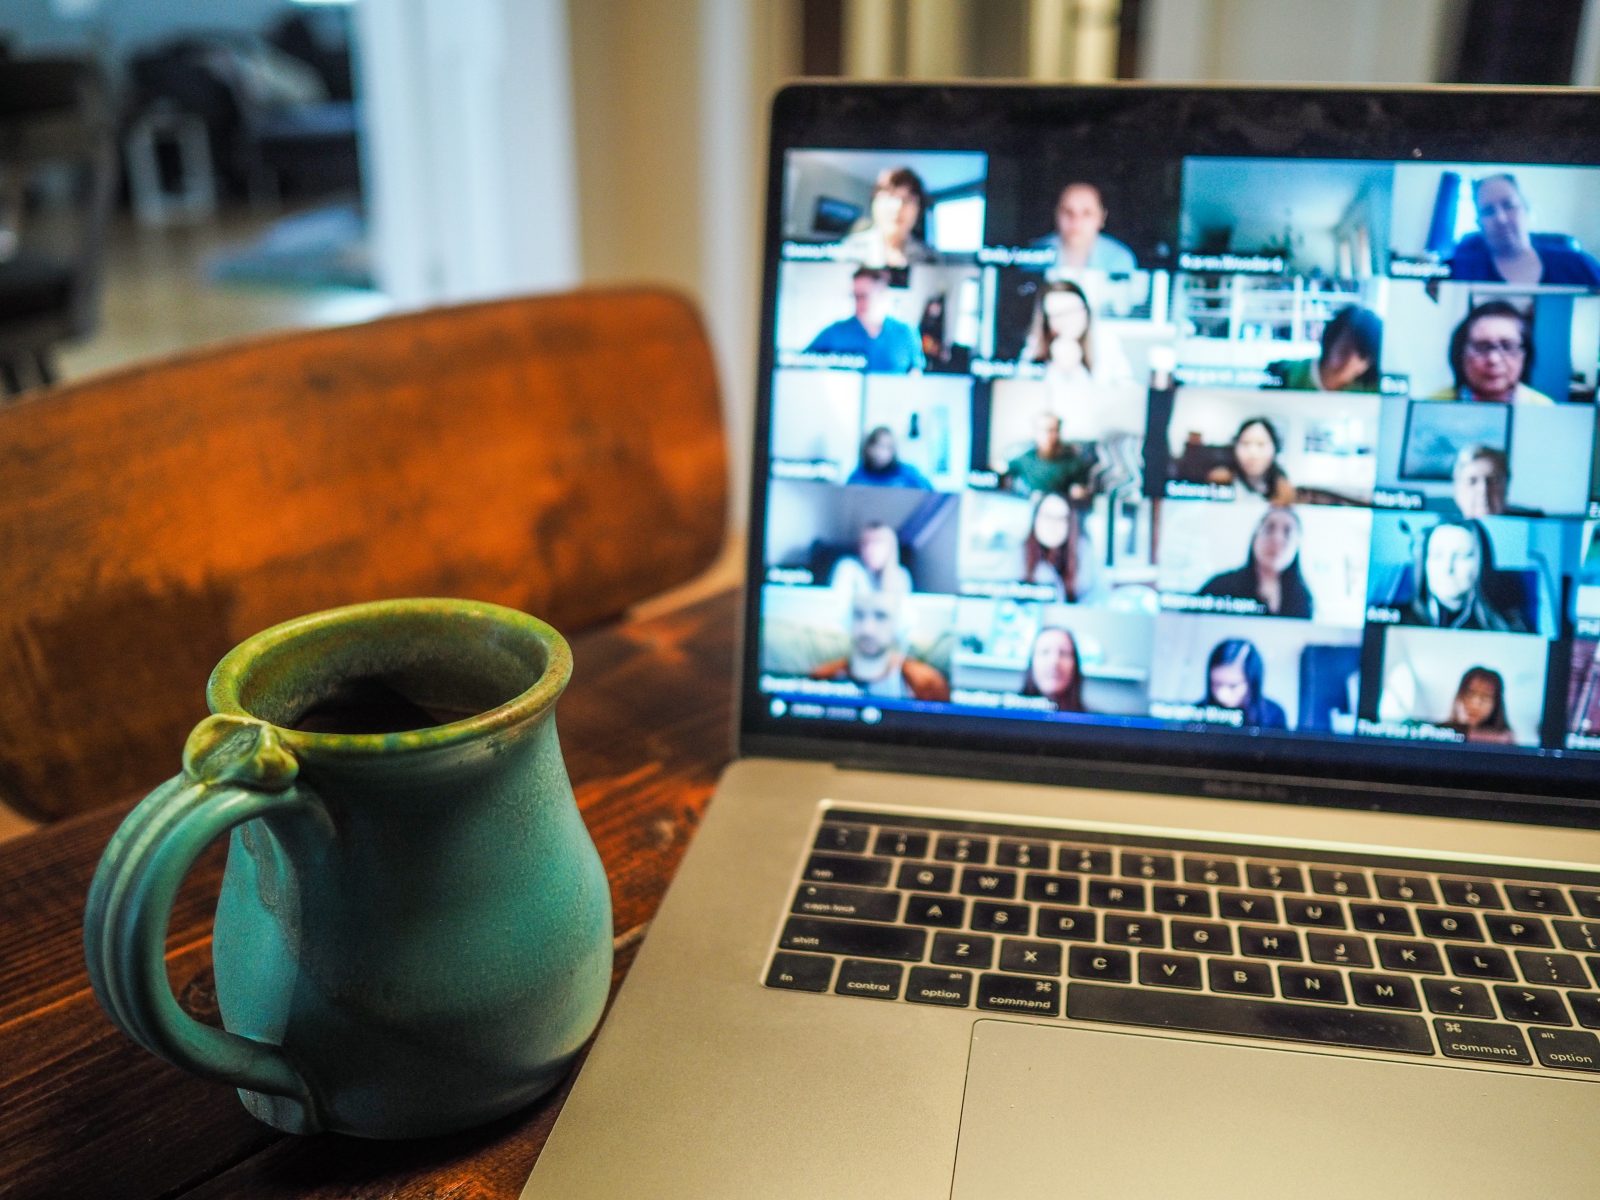 En kaffekop er stillet ved siden af en computer med en videomøde på skærmen. 